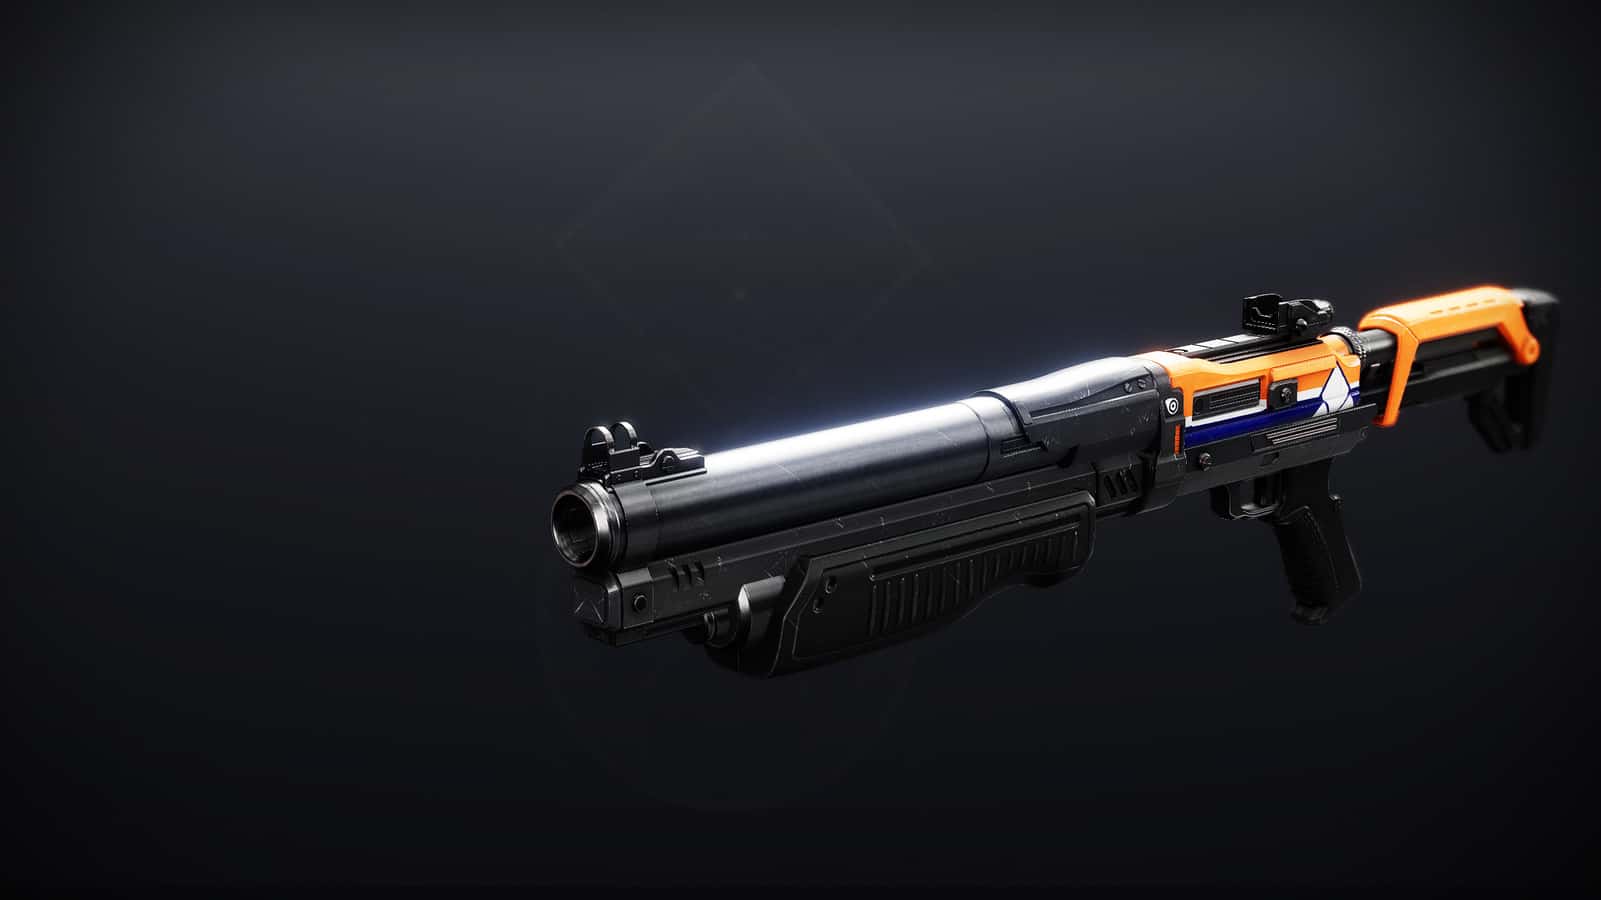 Matador 64 Destiny 2 featured shotgun